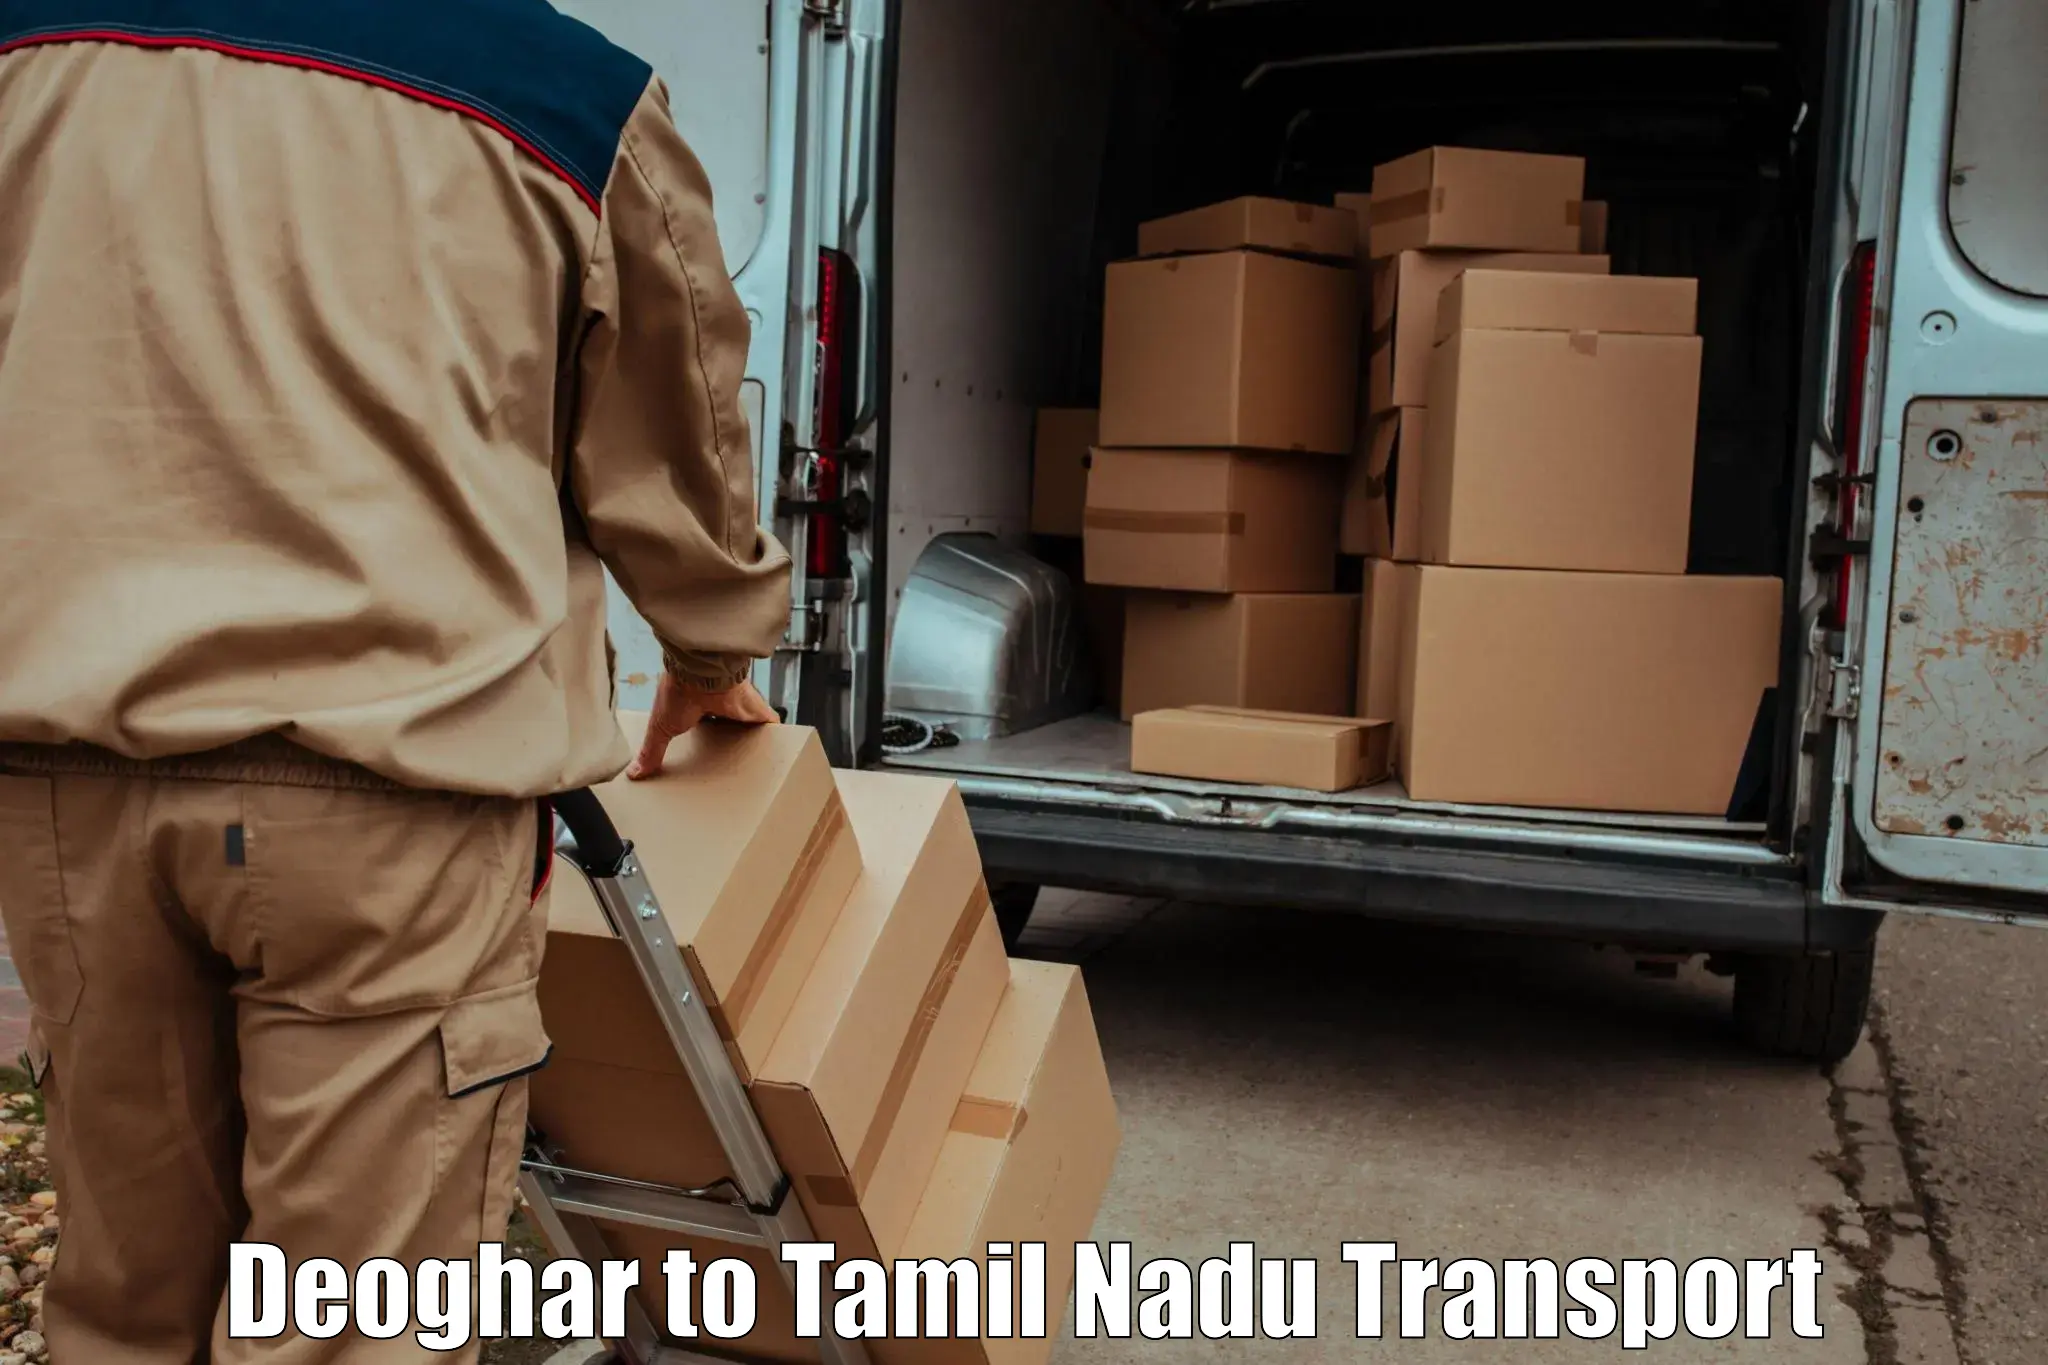 Daily transport service Deoghar to Thiruvarur